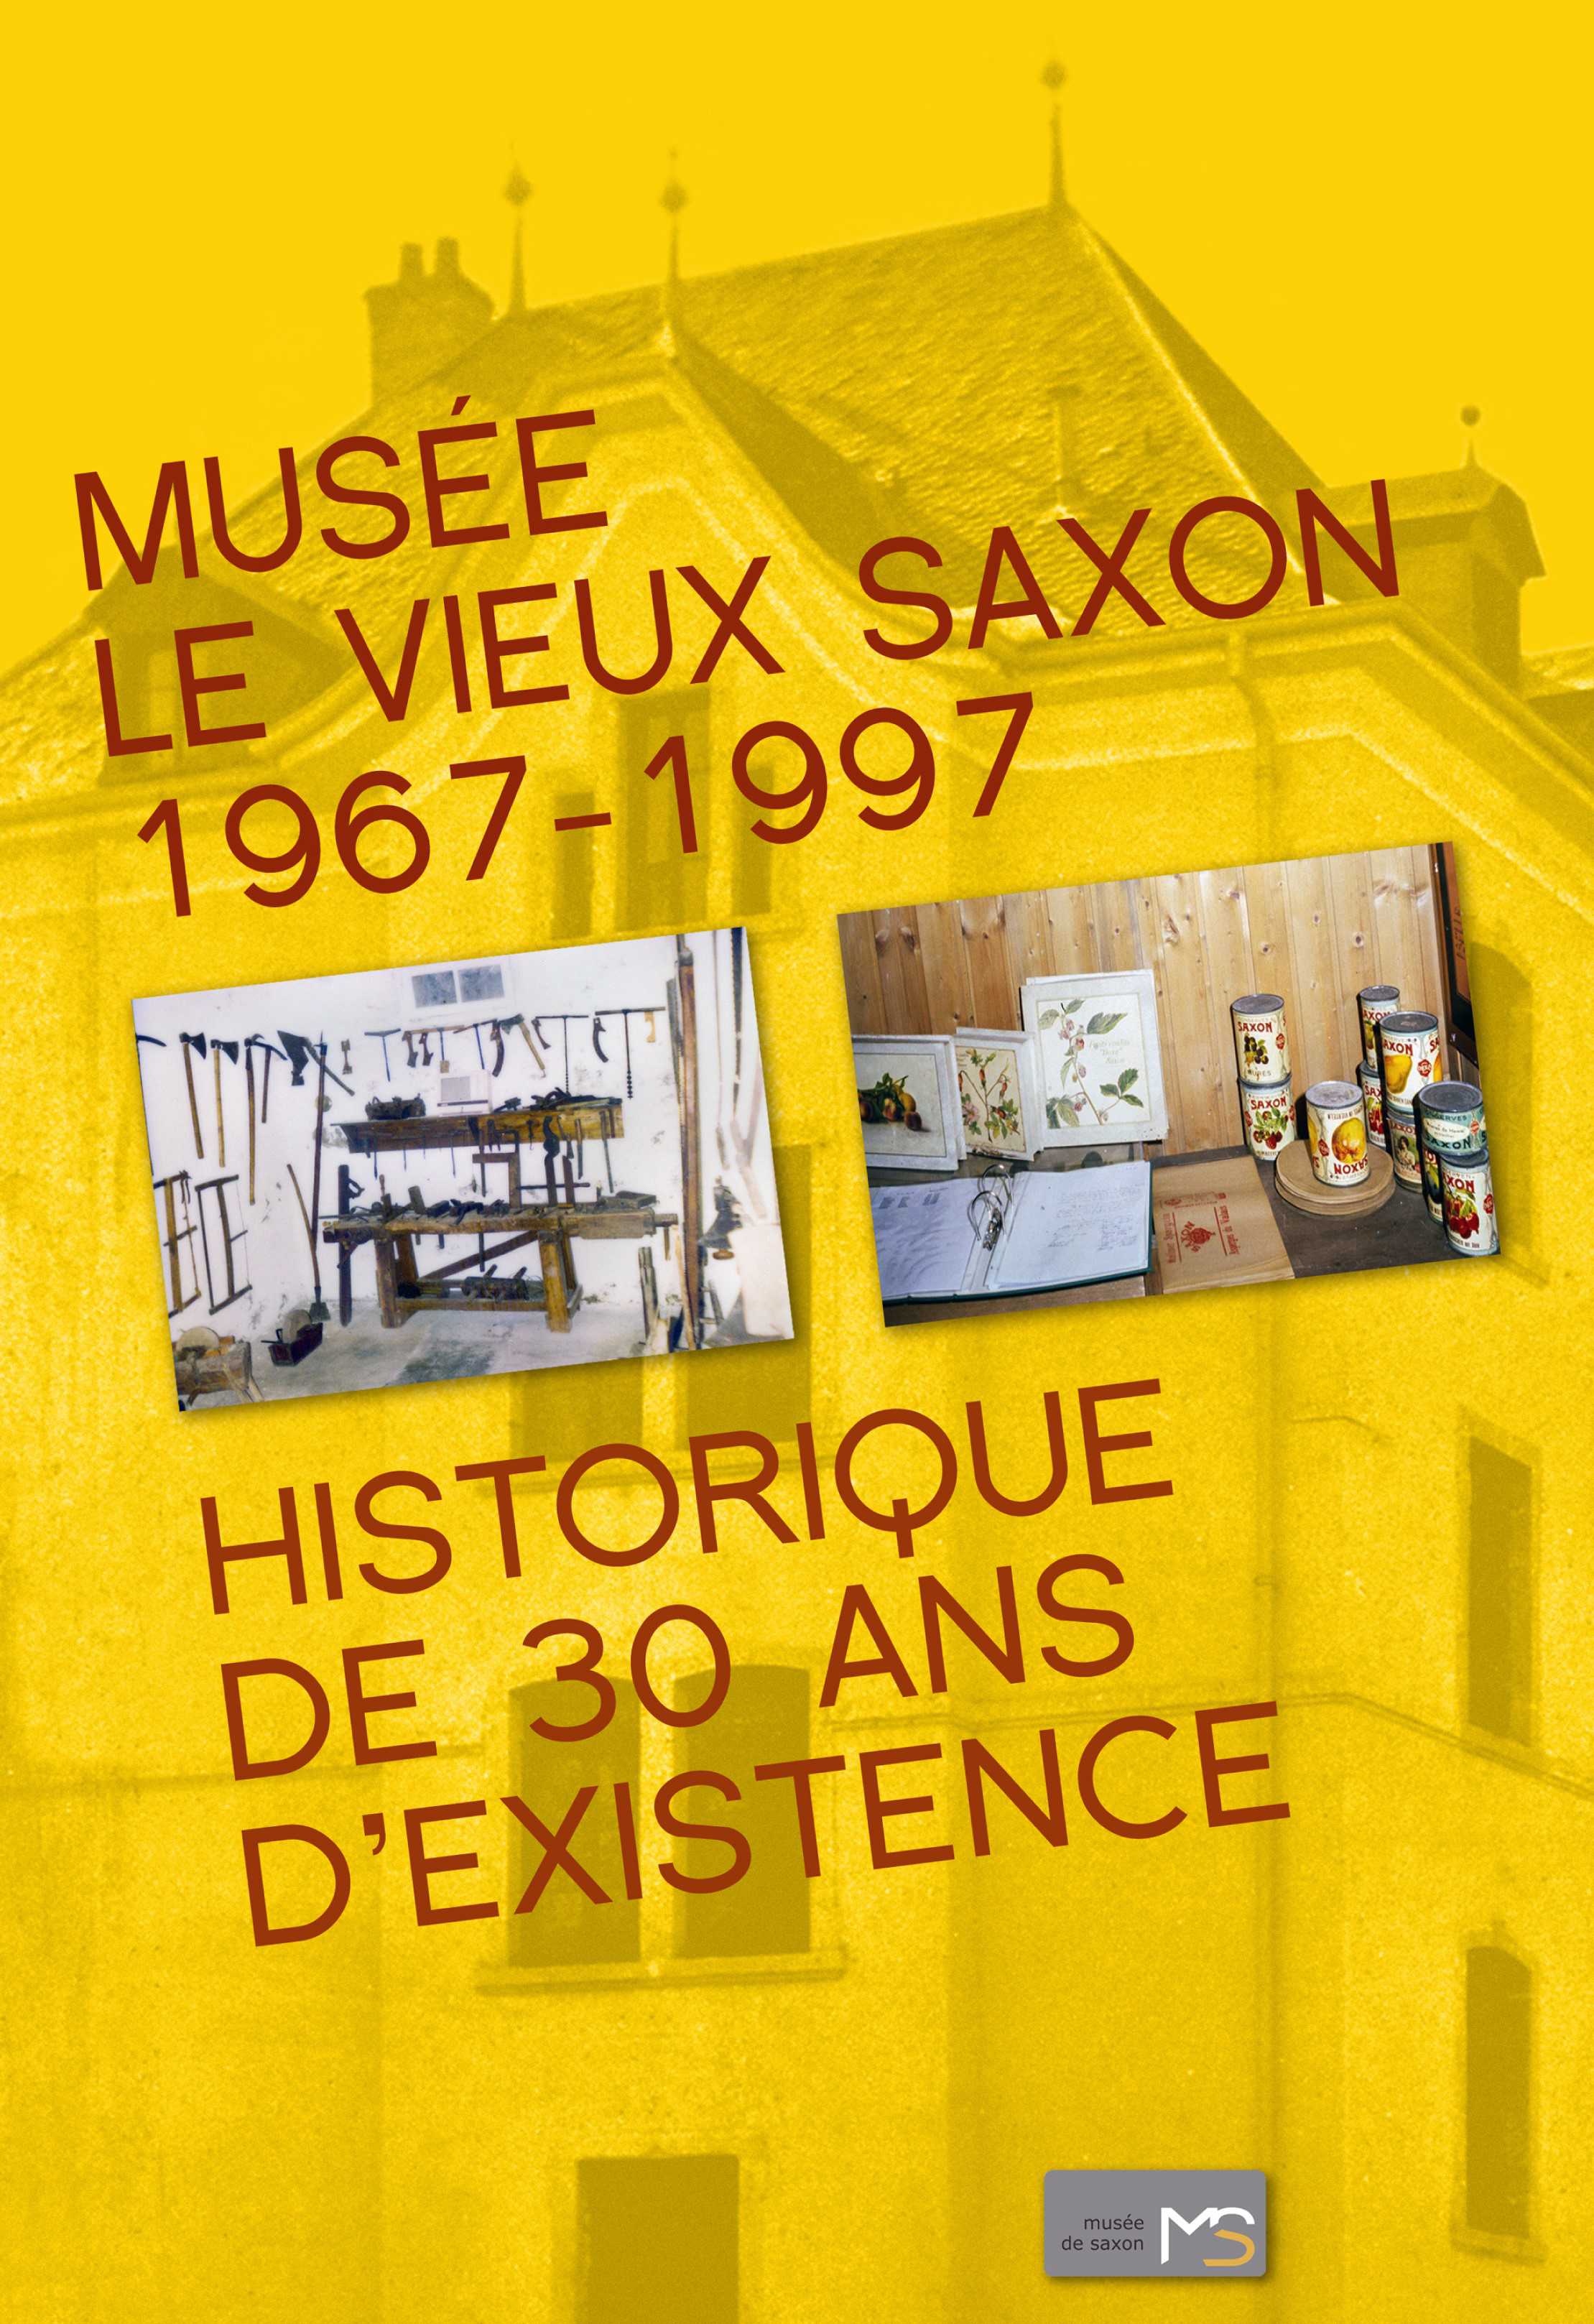 Musée Le Vieux Saxon 1967-1997 – Historique de 30 ans d’existence